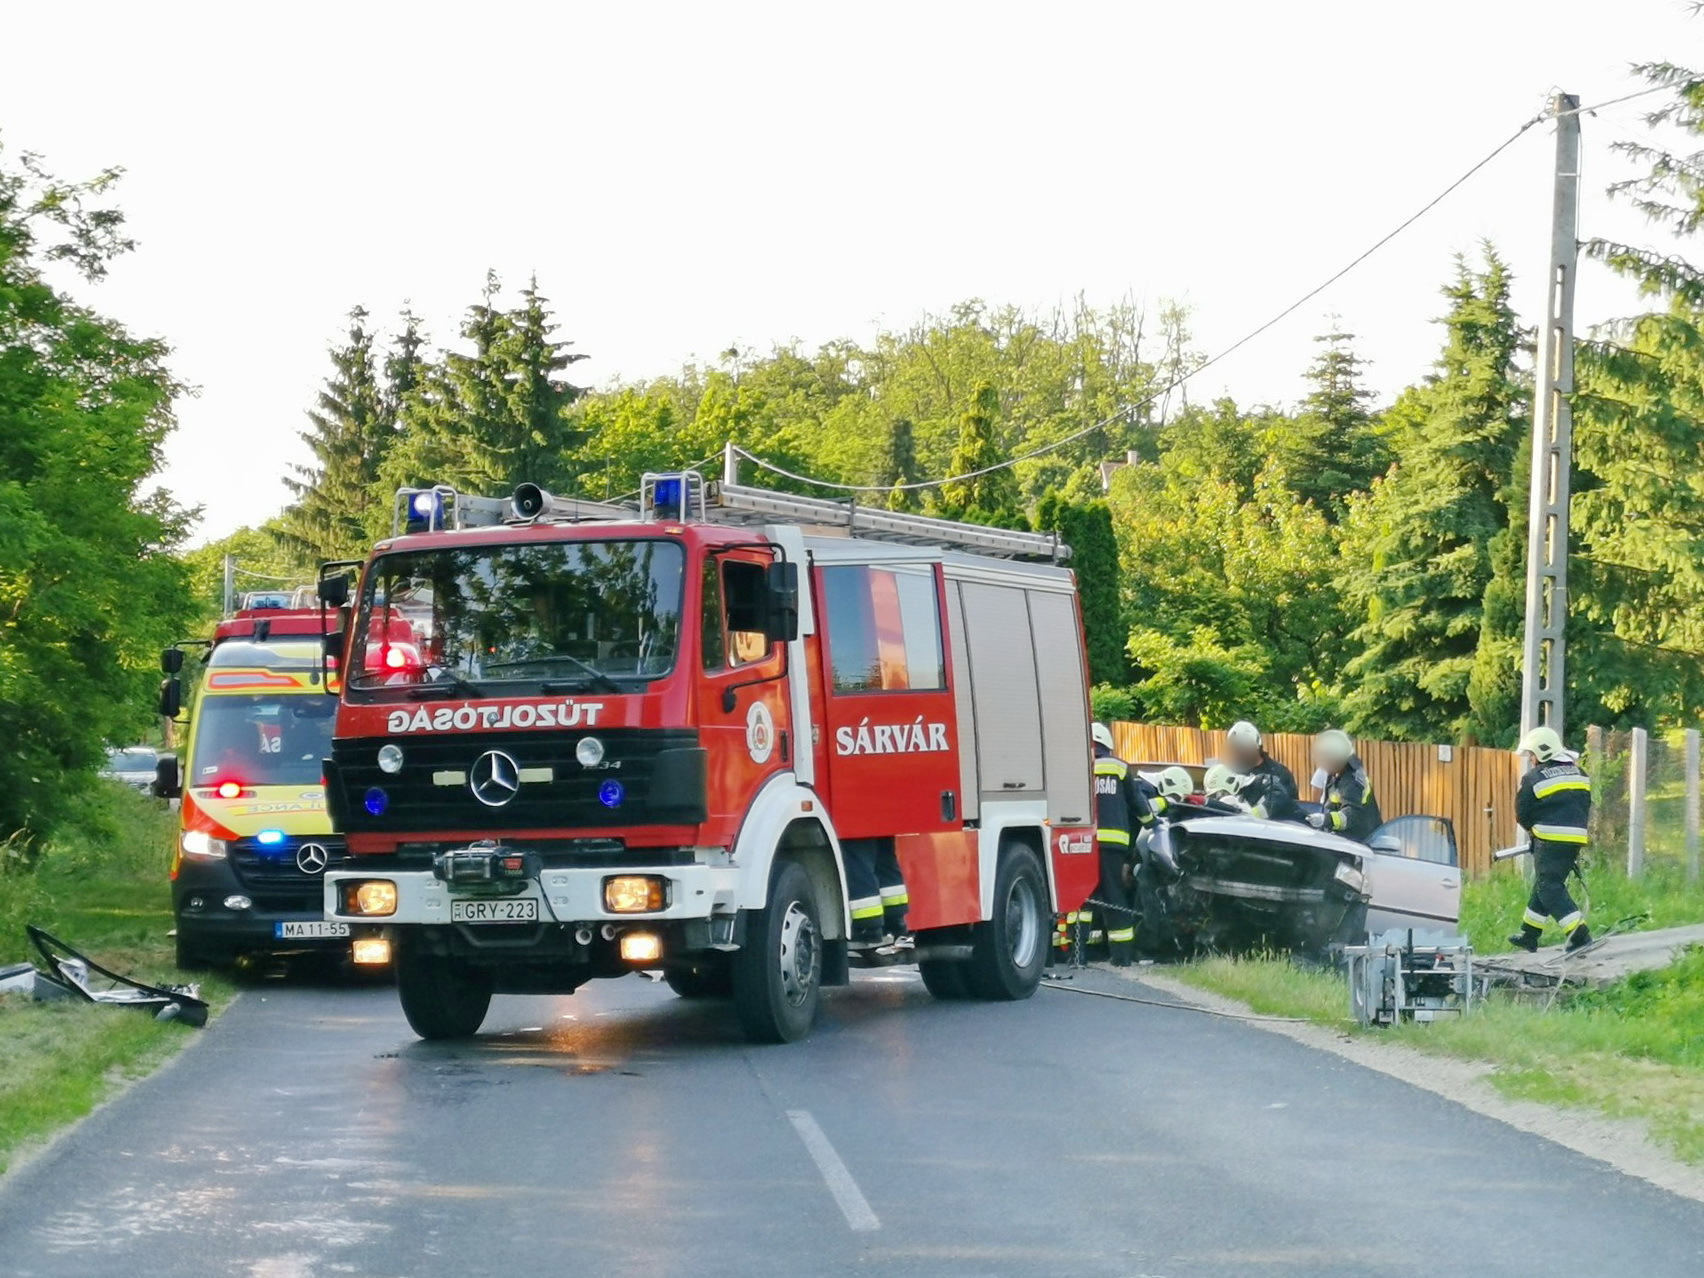 Tűzoltók szabadítják ki a sérültet Sárváron - darázs elhessegetése miatt történhetett a baleset